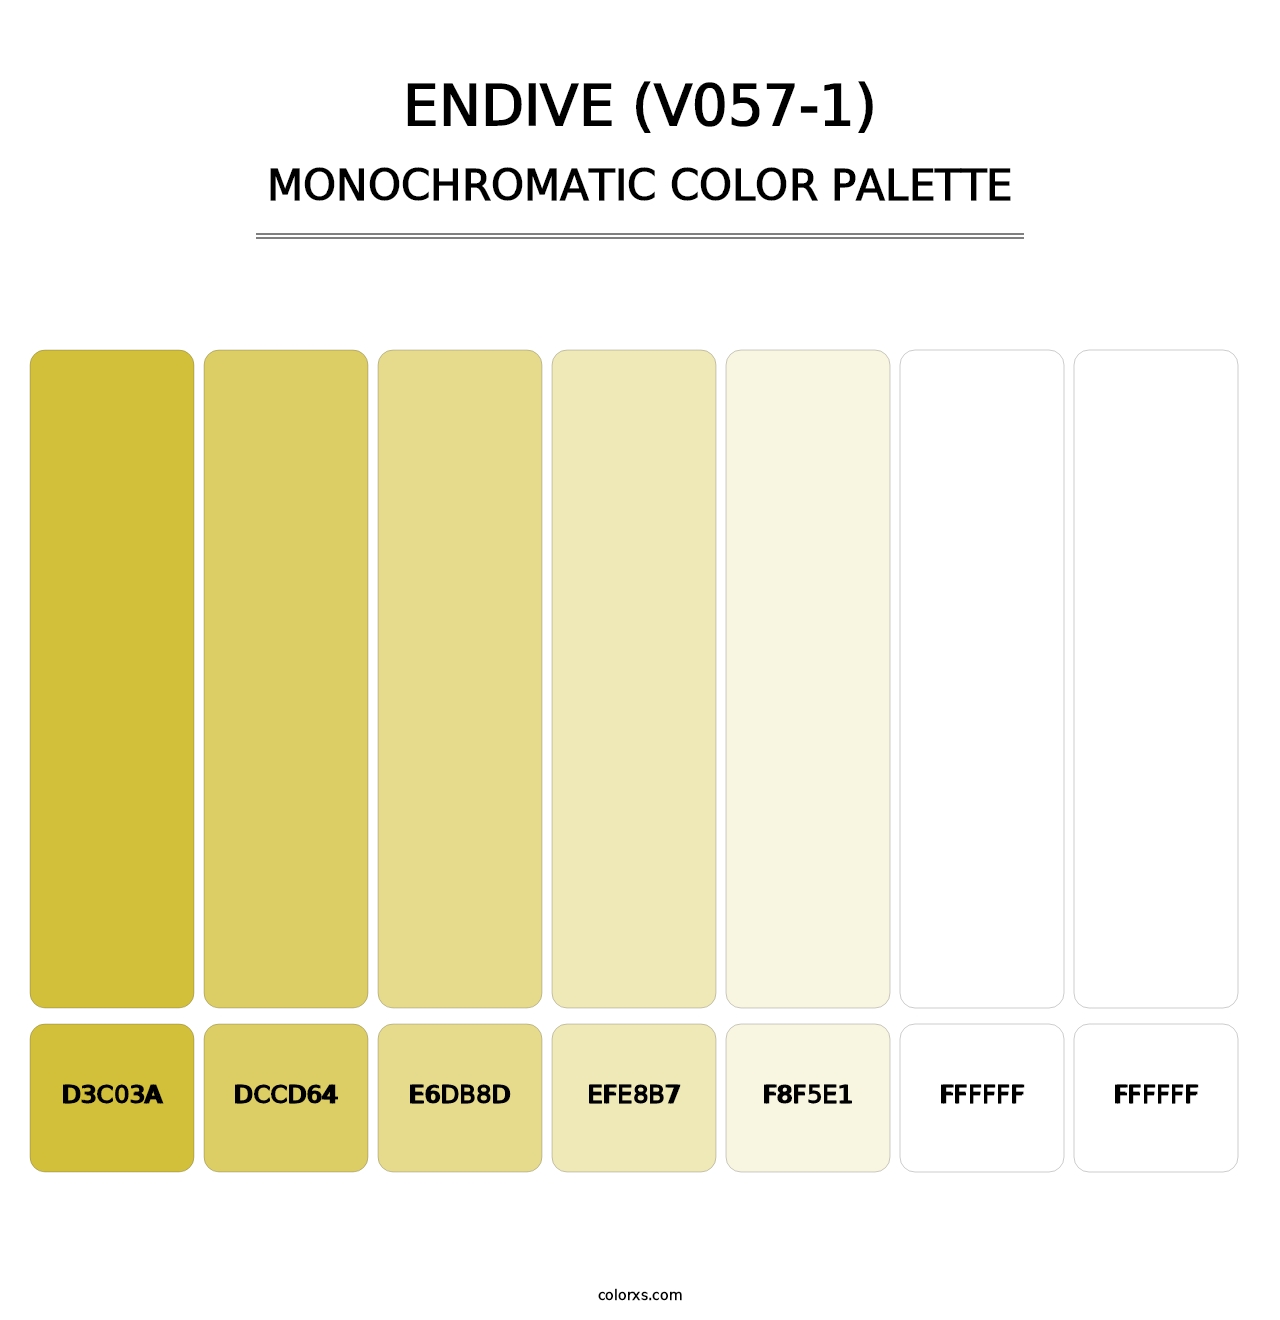 Endive (V057-1) - Monochromatic Color Palette